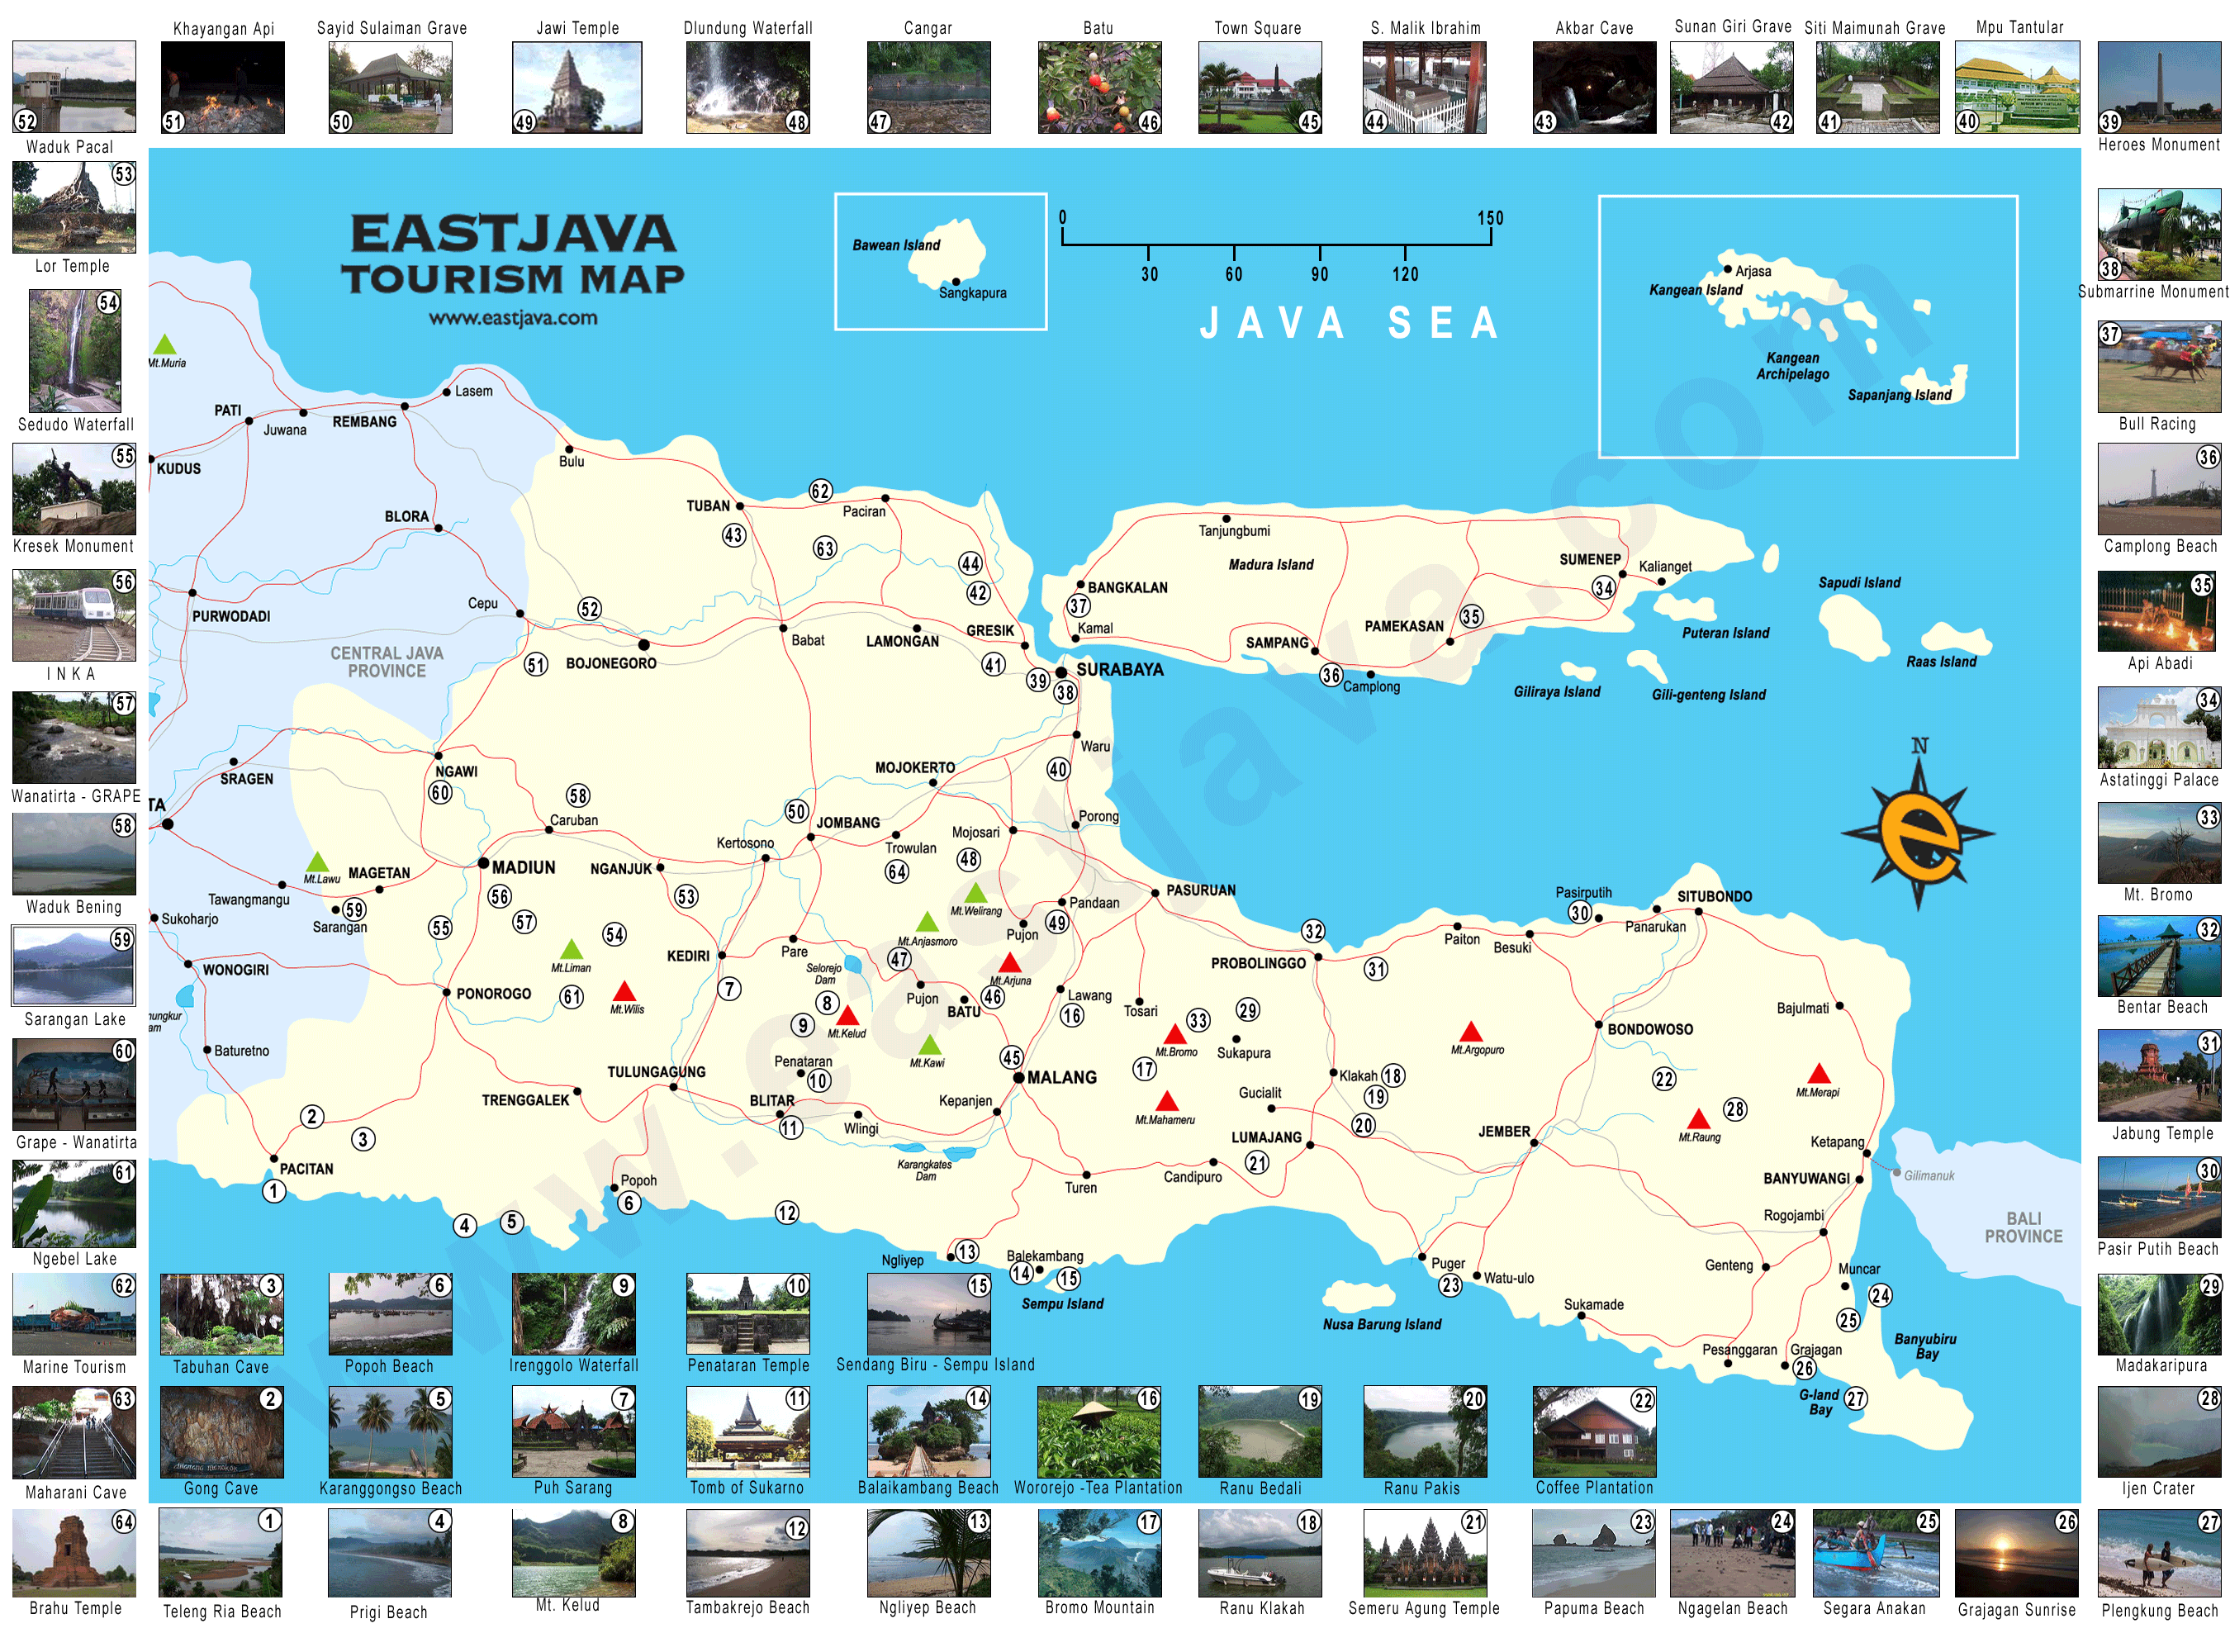 Map of East Java - Peta Jawa Timur - East Java Tourism Map